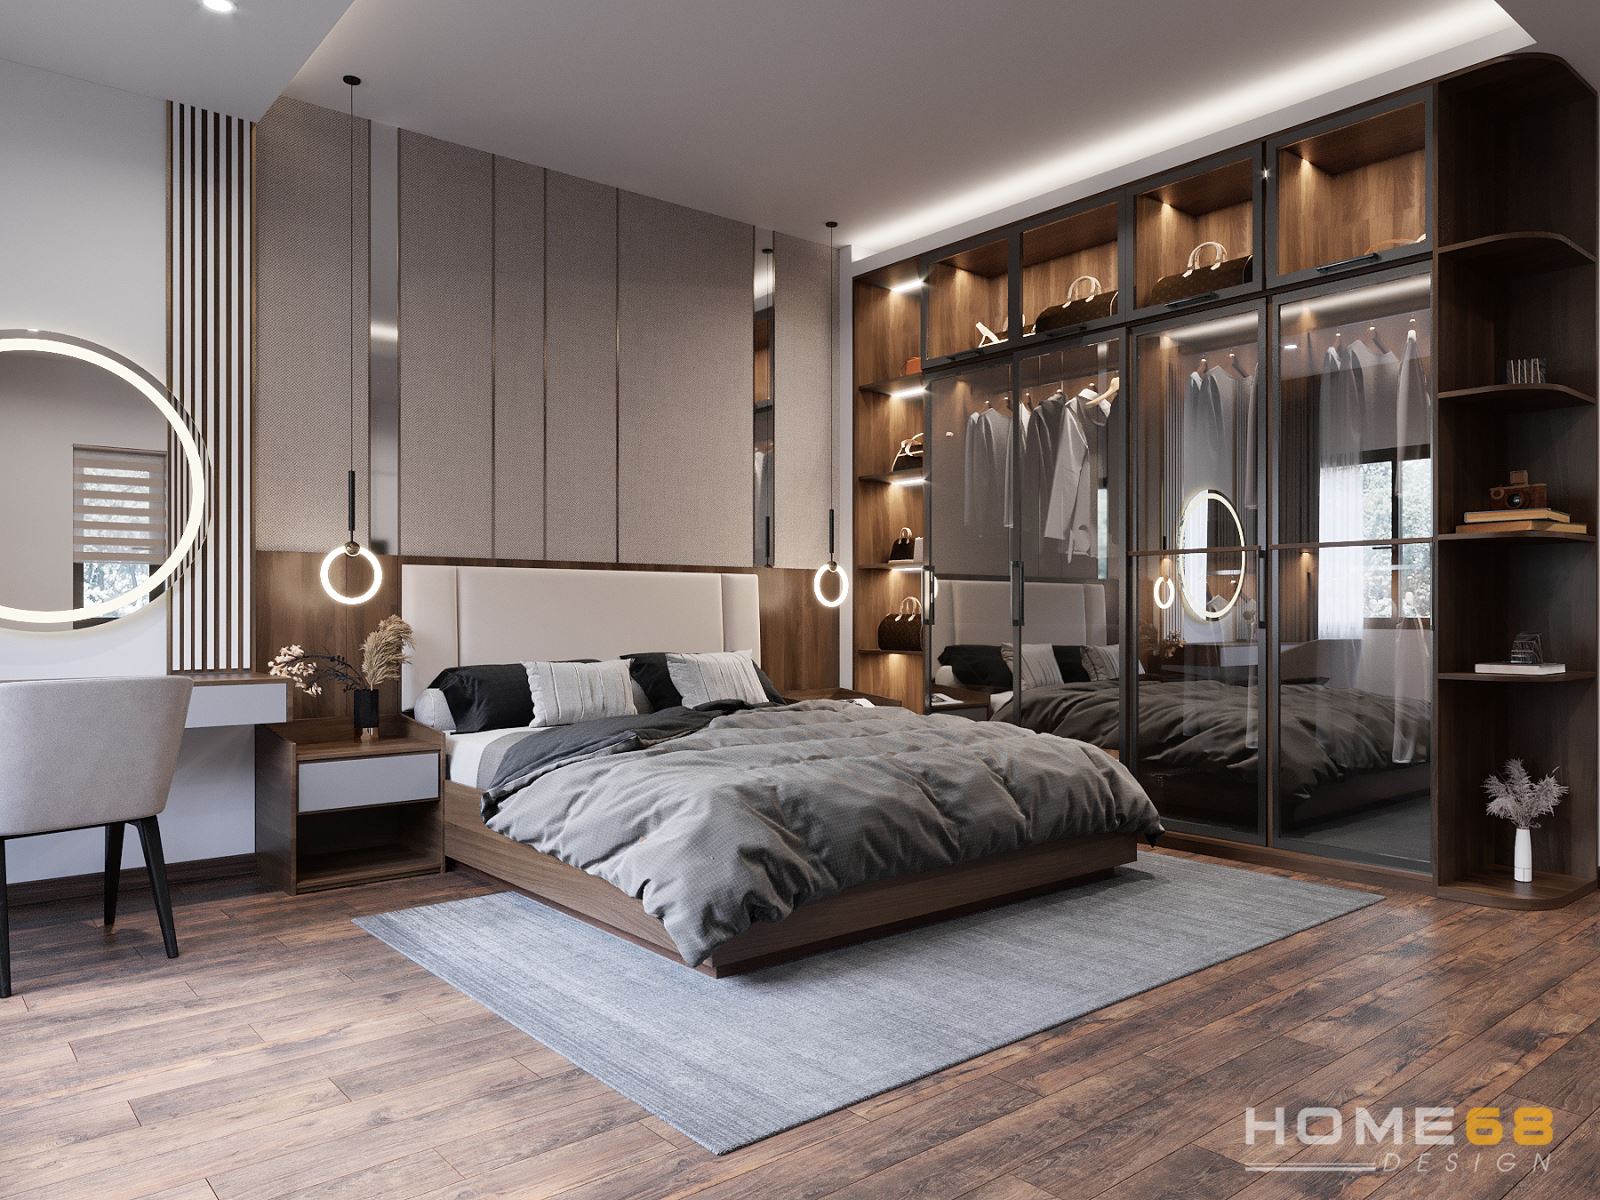 Thiết kế nội thất phòng ngủ hiện đại với tone màu trắng nâu độc đáo, cuốn hút- HOME68